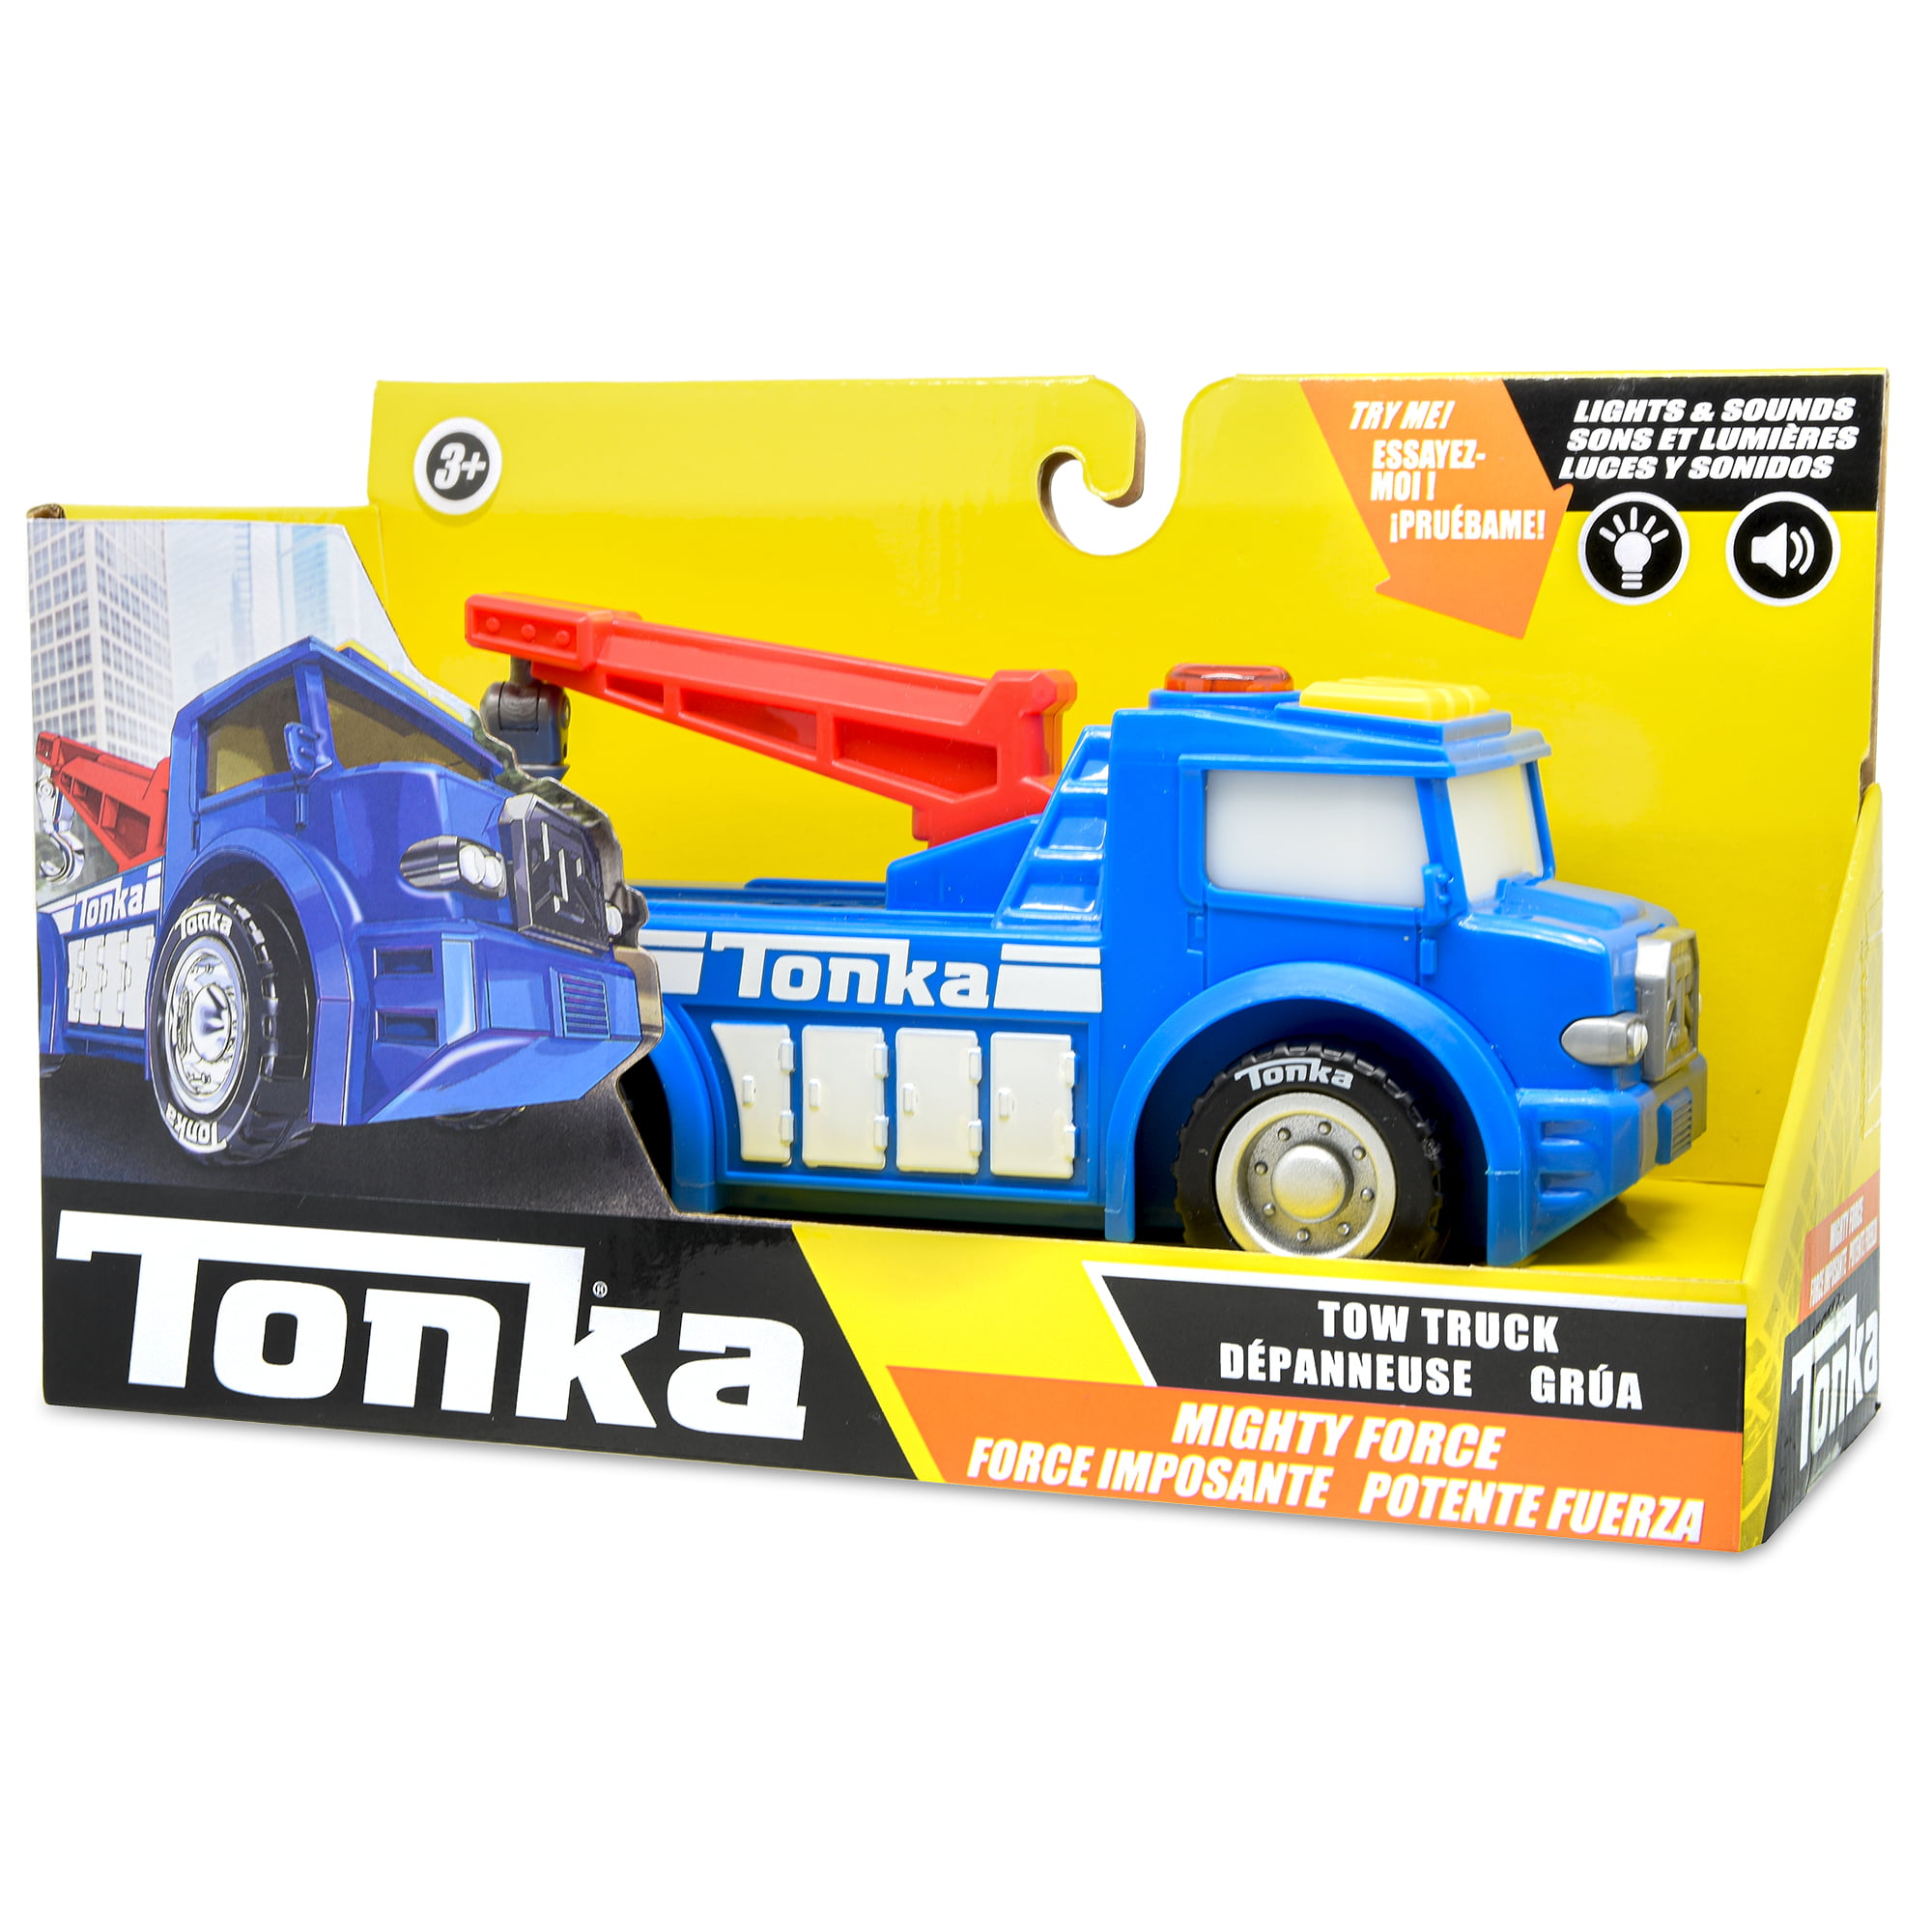 Tonka mighty wrecker